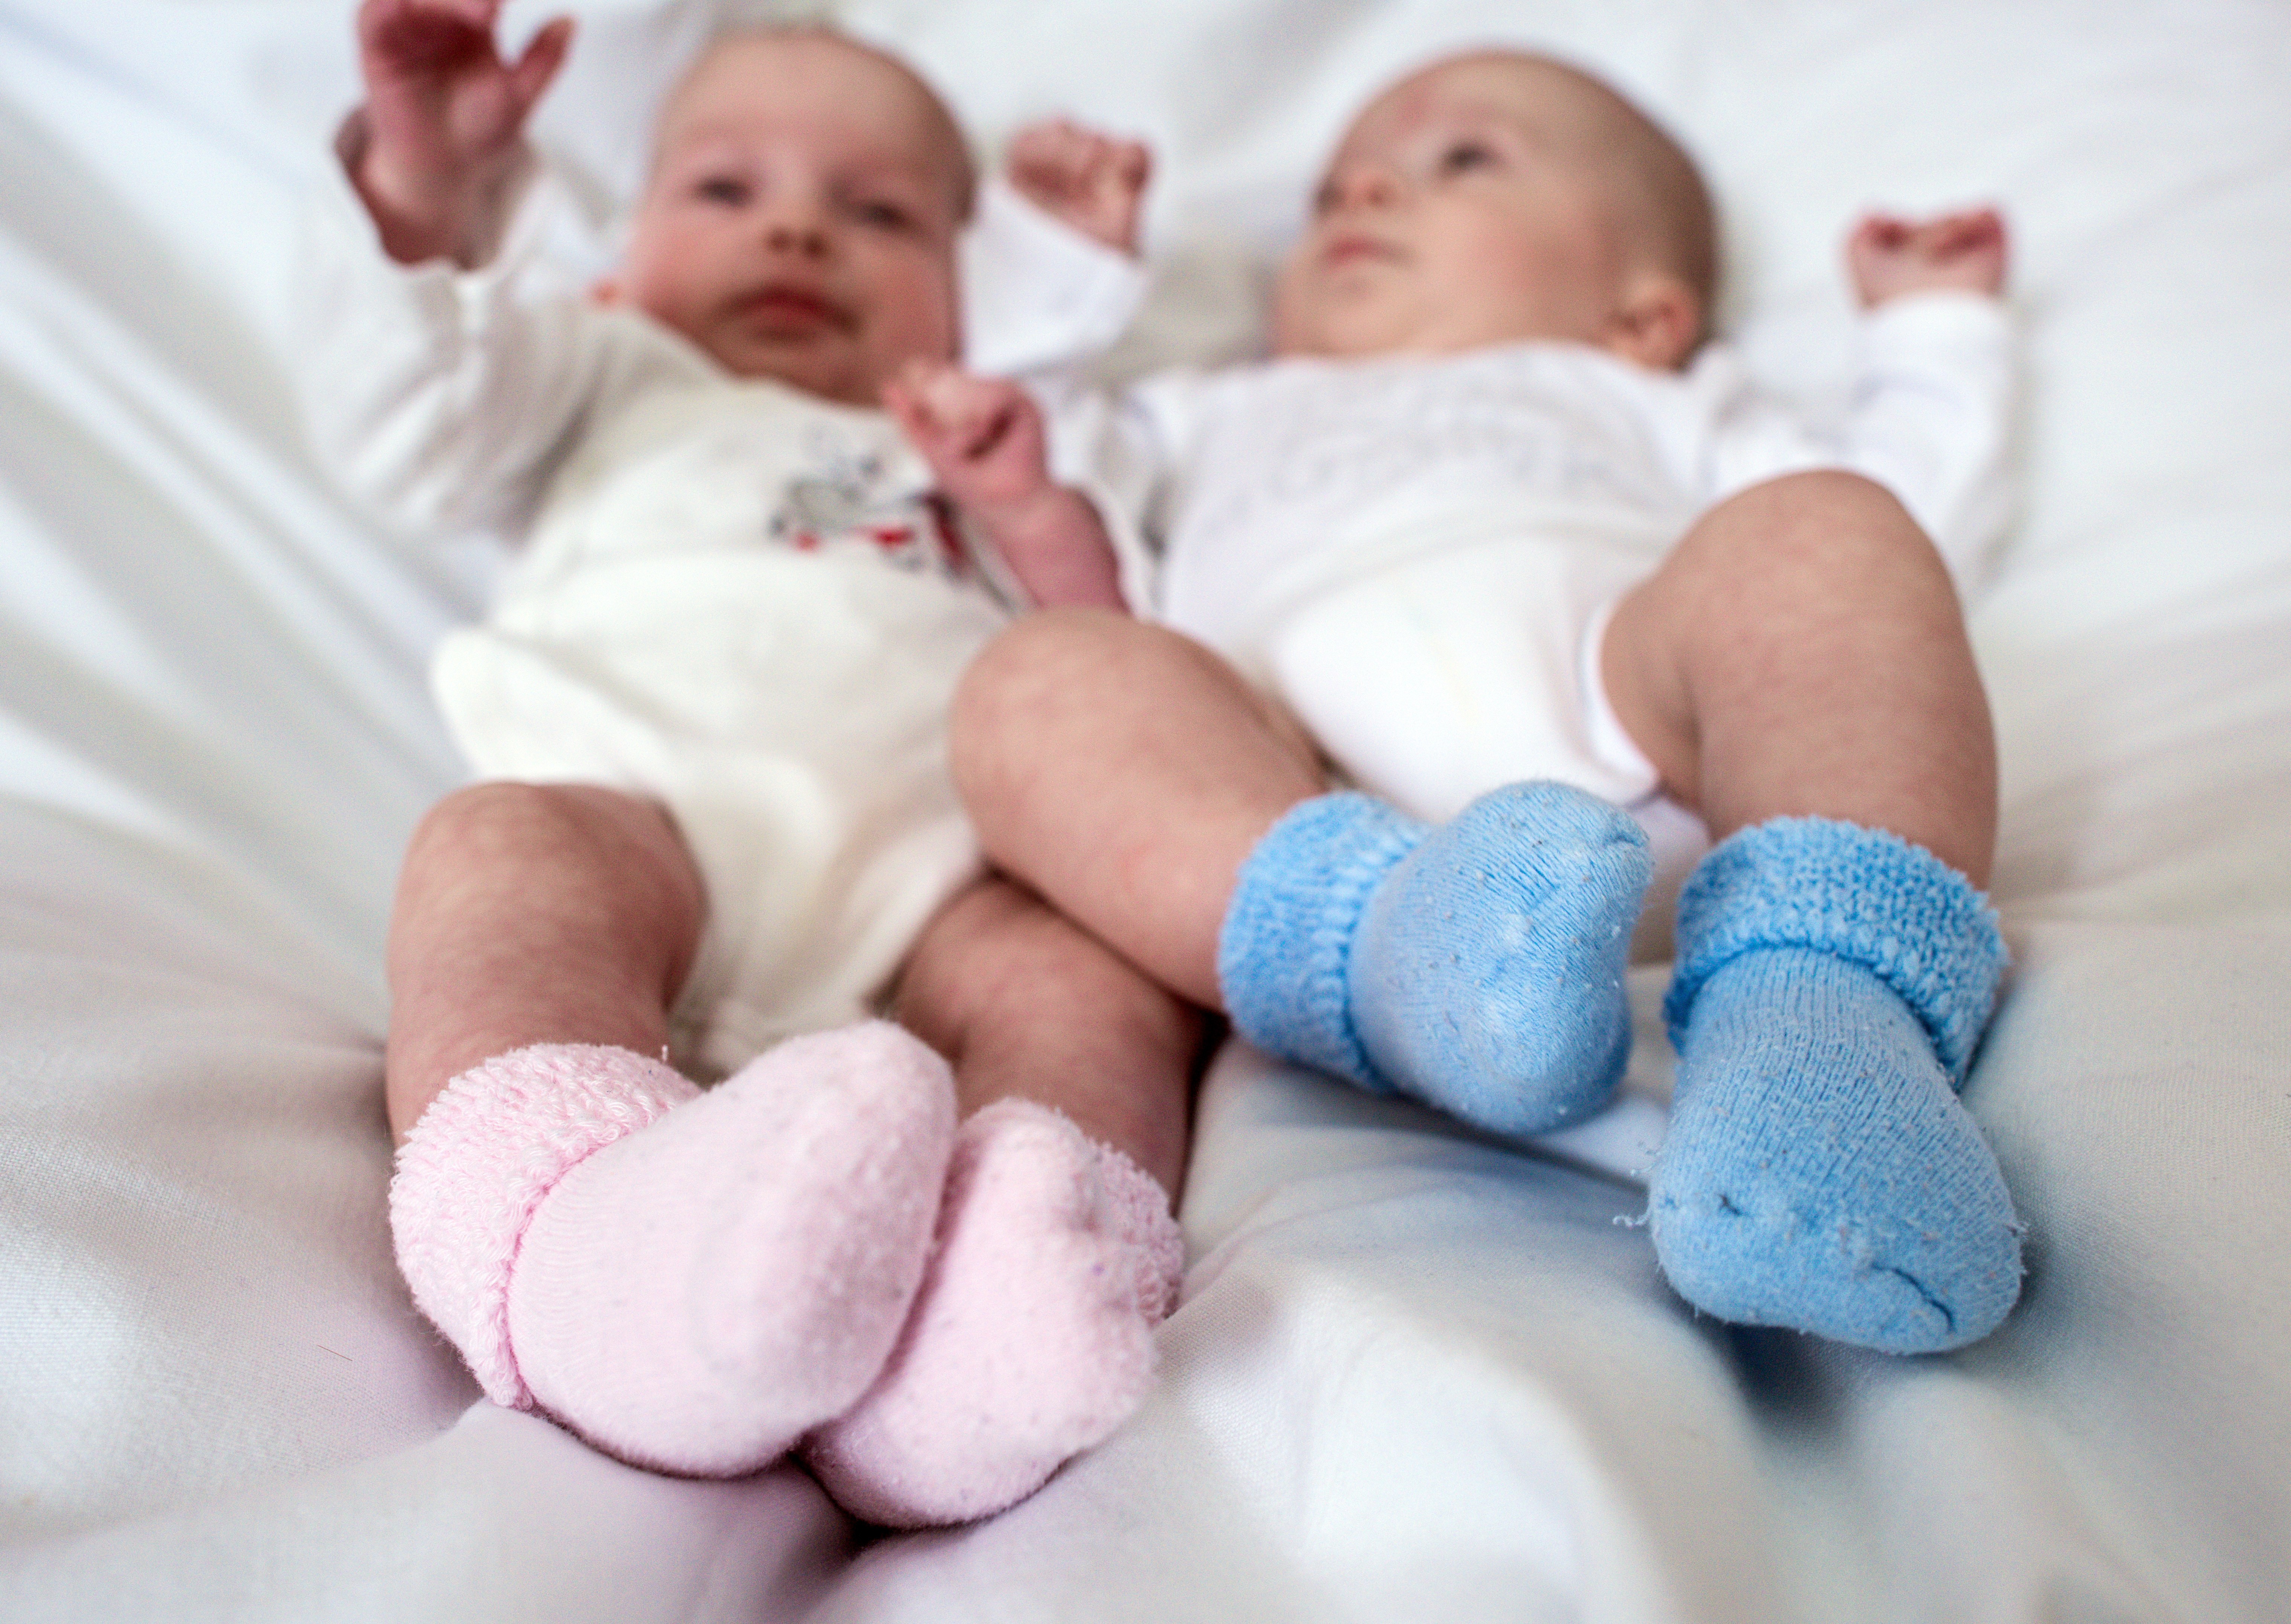 Imagem ilustrativa de bebês gêmeos em uma maternidade (Foto: Getty Images)